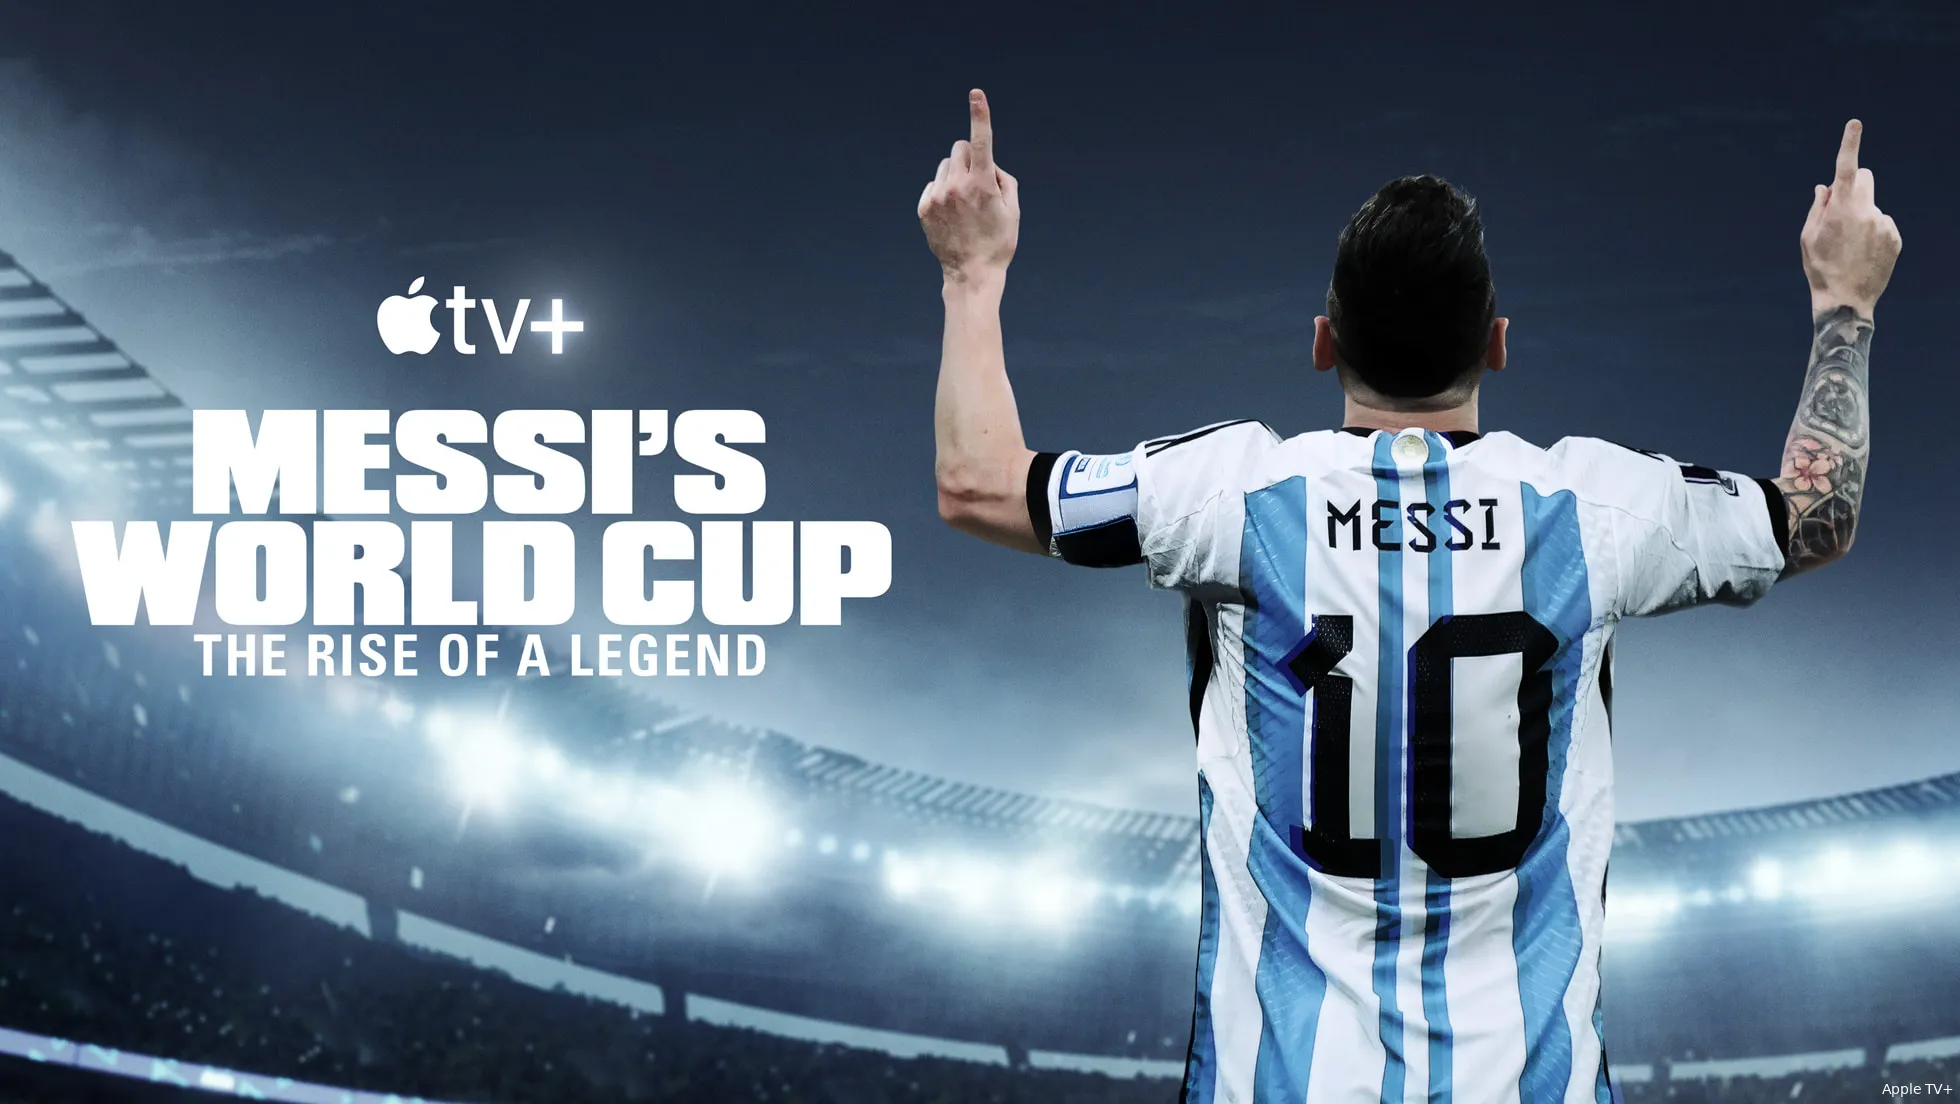 121523 teaser trailer messi world cup big image 01 big image postjpgslideshow large